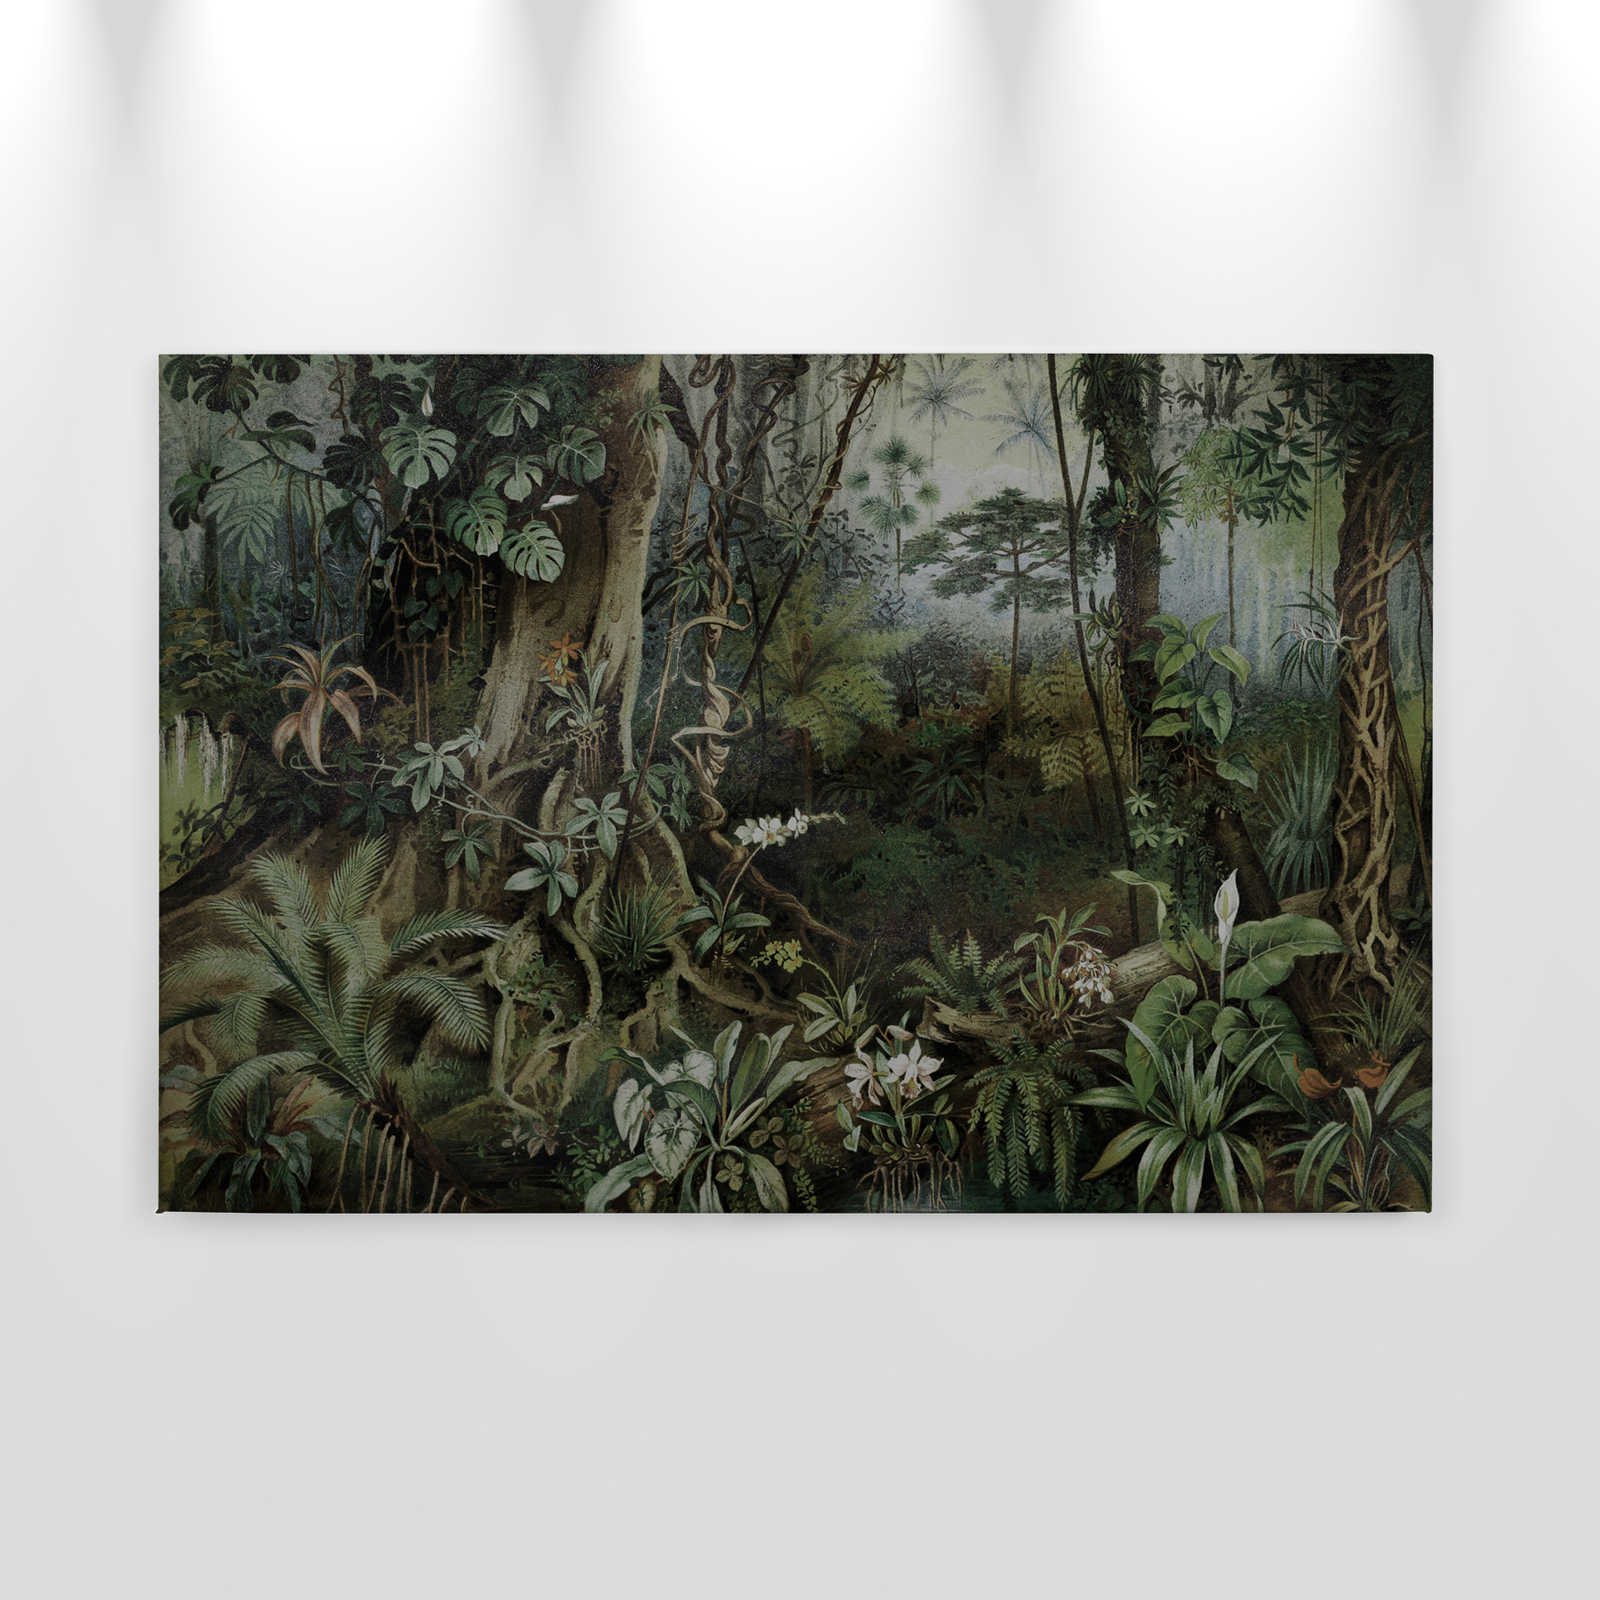             Jungle canvas schilderij in tekenstijl | muren door patel - 0,90 m x 0,60 m
        